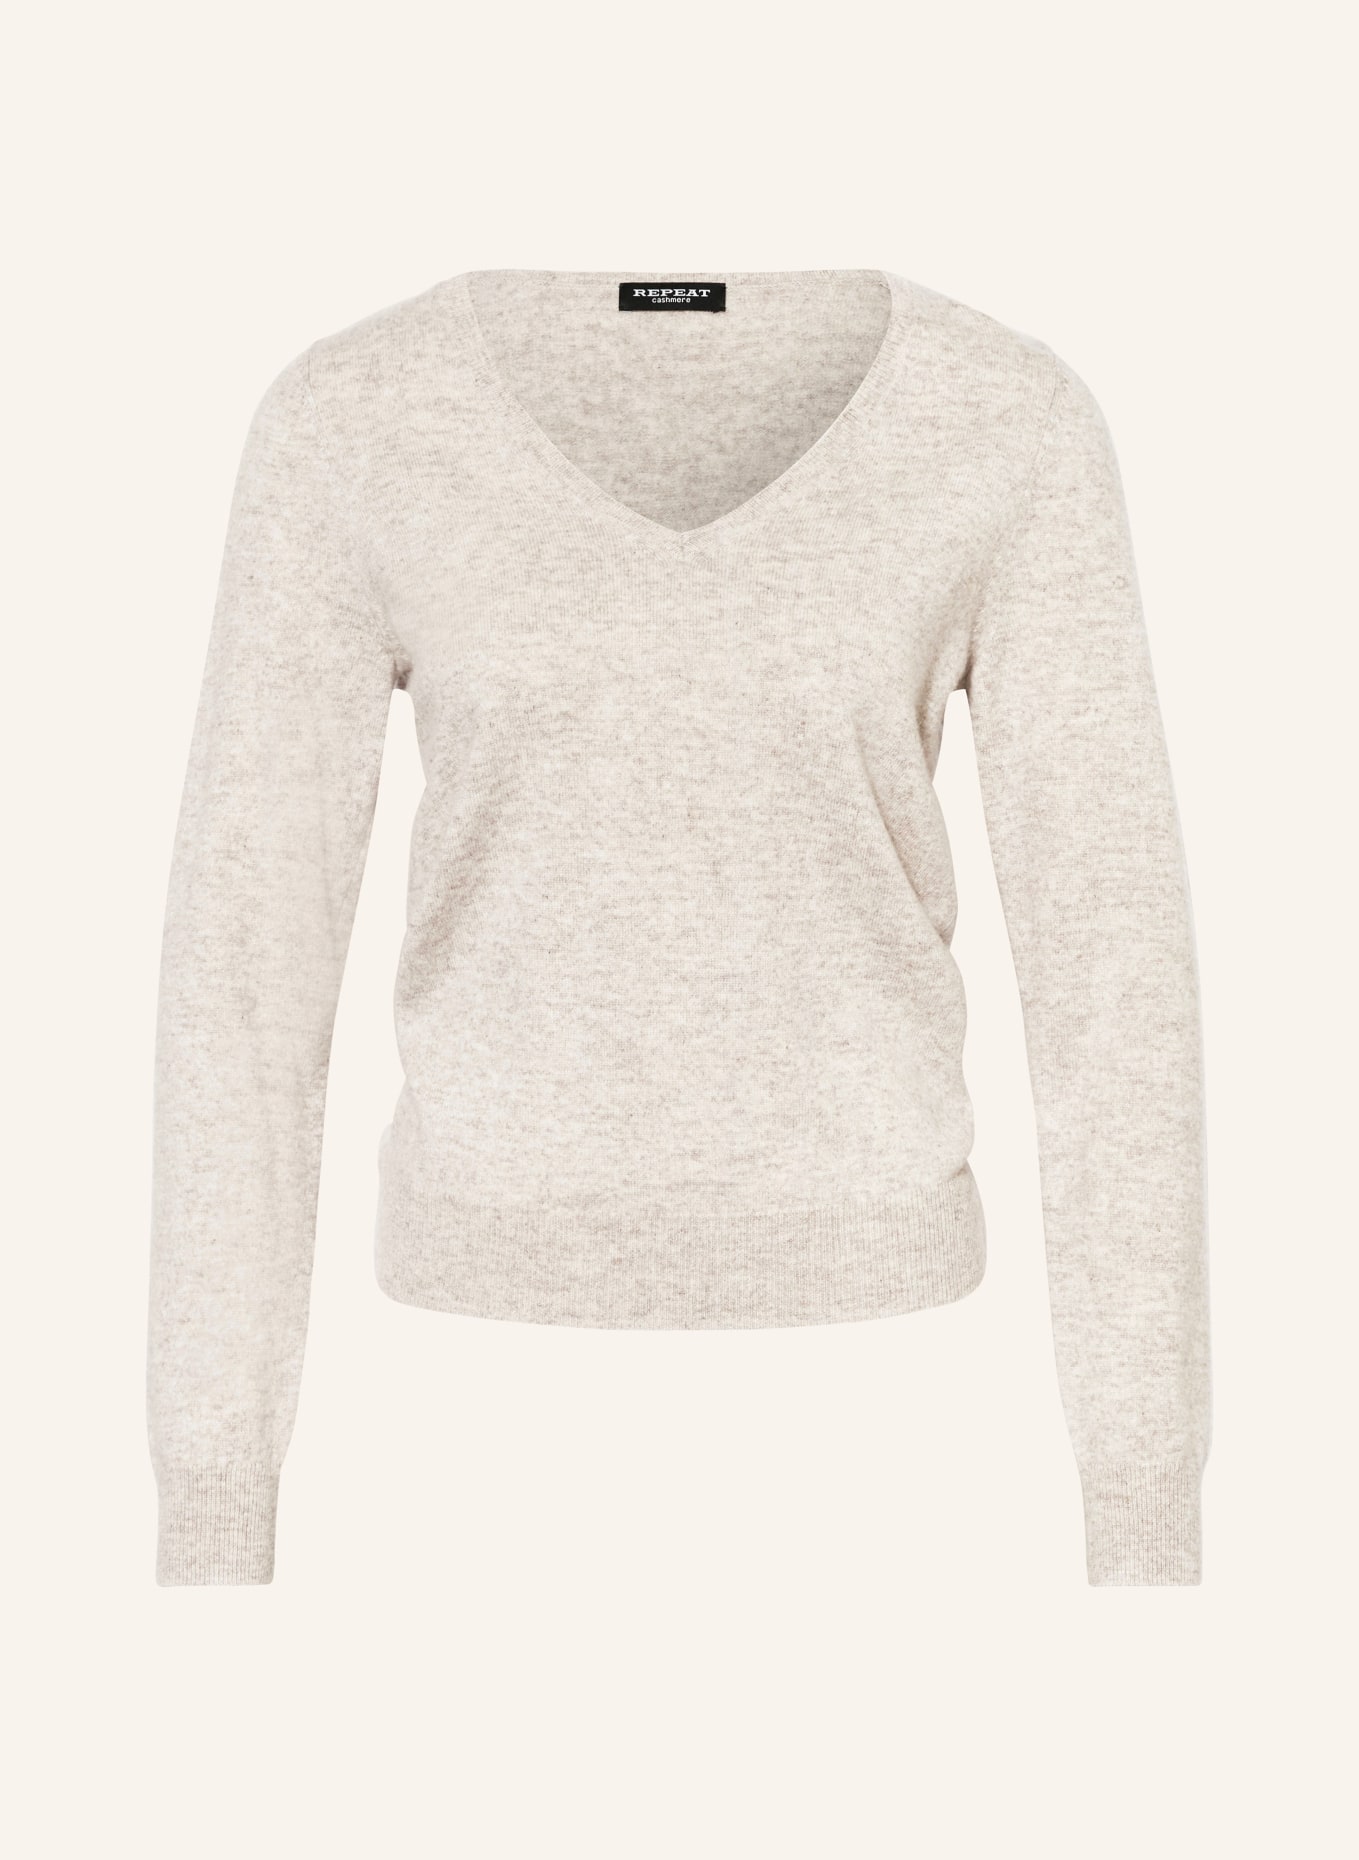 REPEAT Cashmere-Pullover, Farbe: HELLBRAUN (Bild 1)